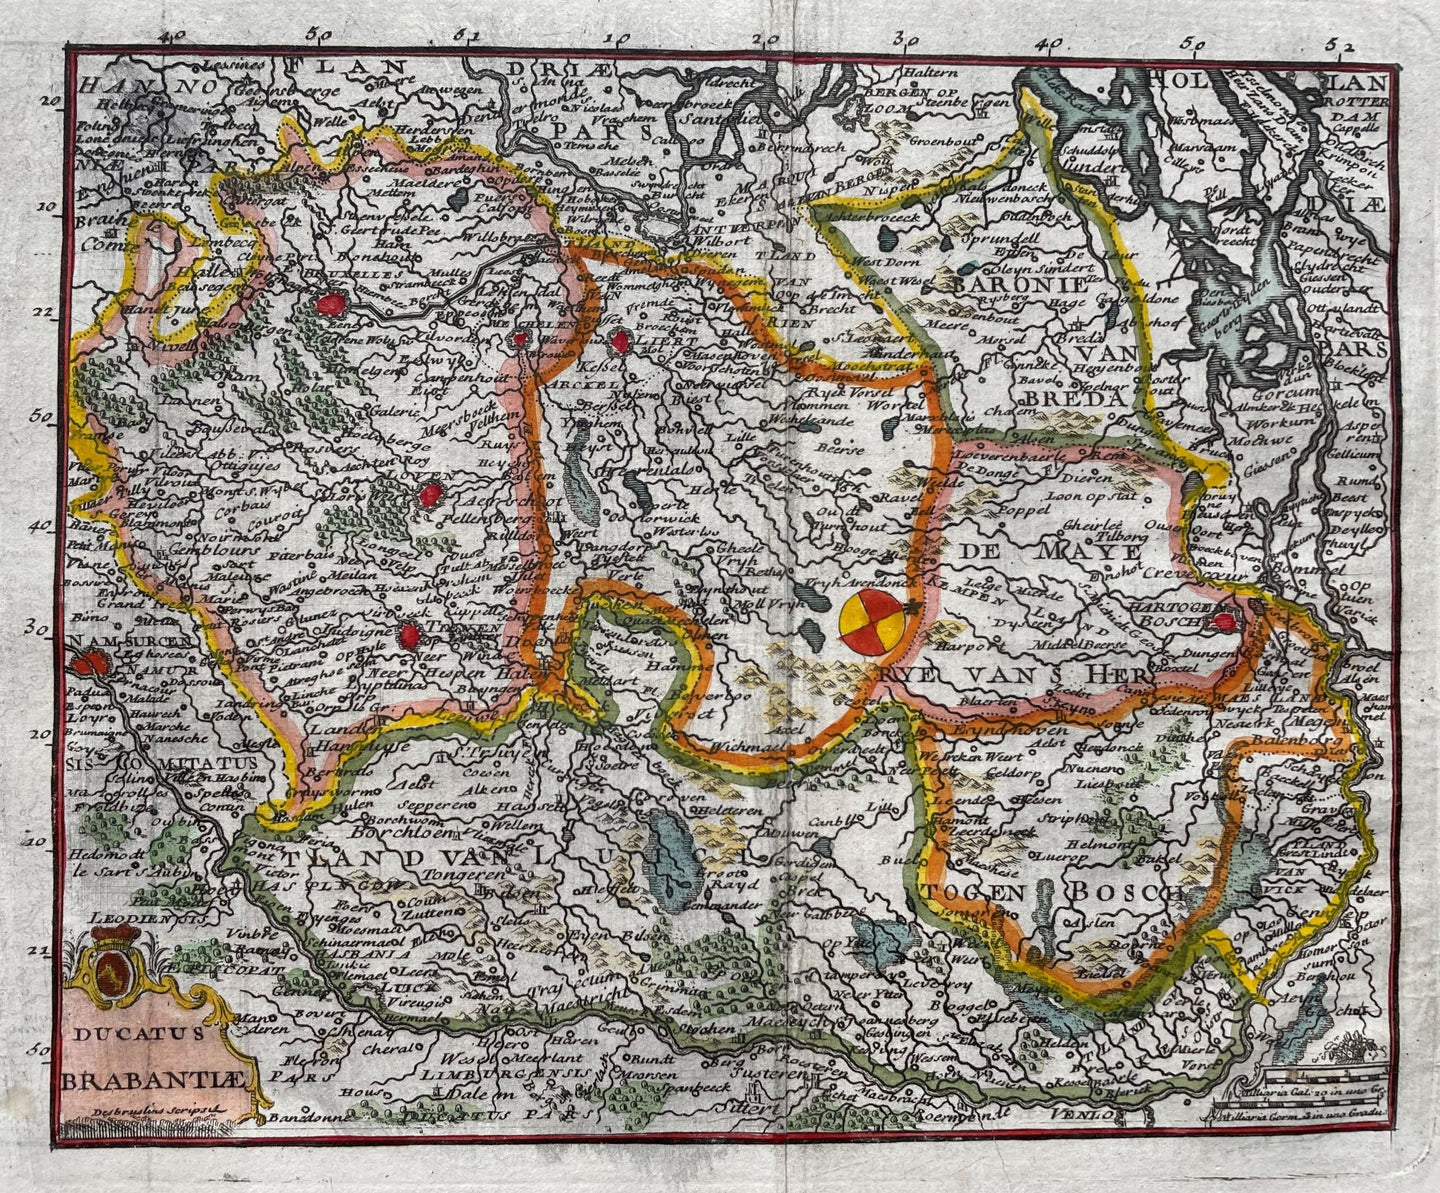 Brabant - F Desbrulins / Jaime Certa - 1739